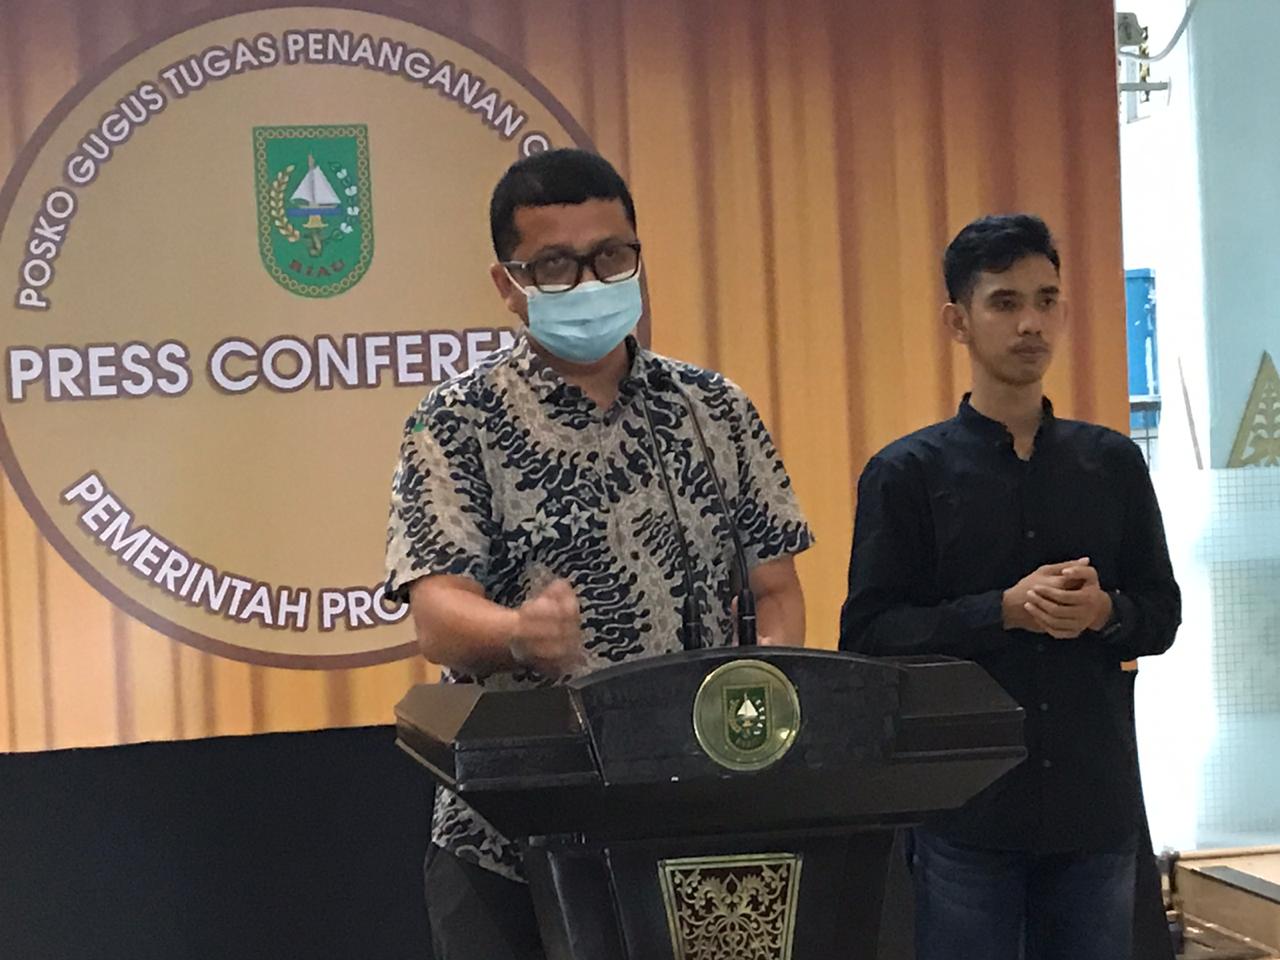 Jubir Covid-19: Riau Tinggal Menunggu Bom Waktu Penyebaran Corona